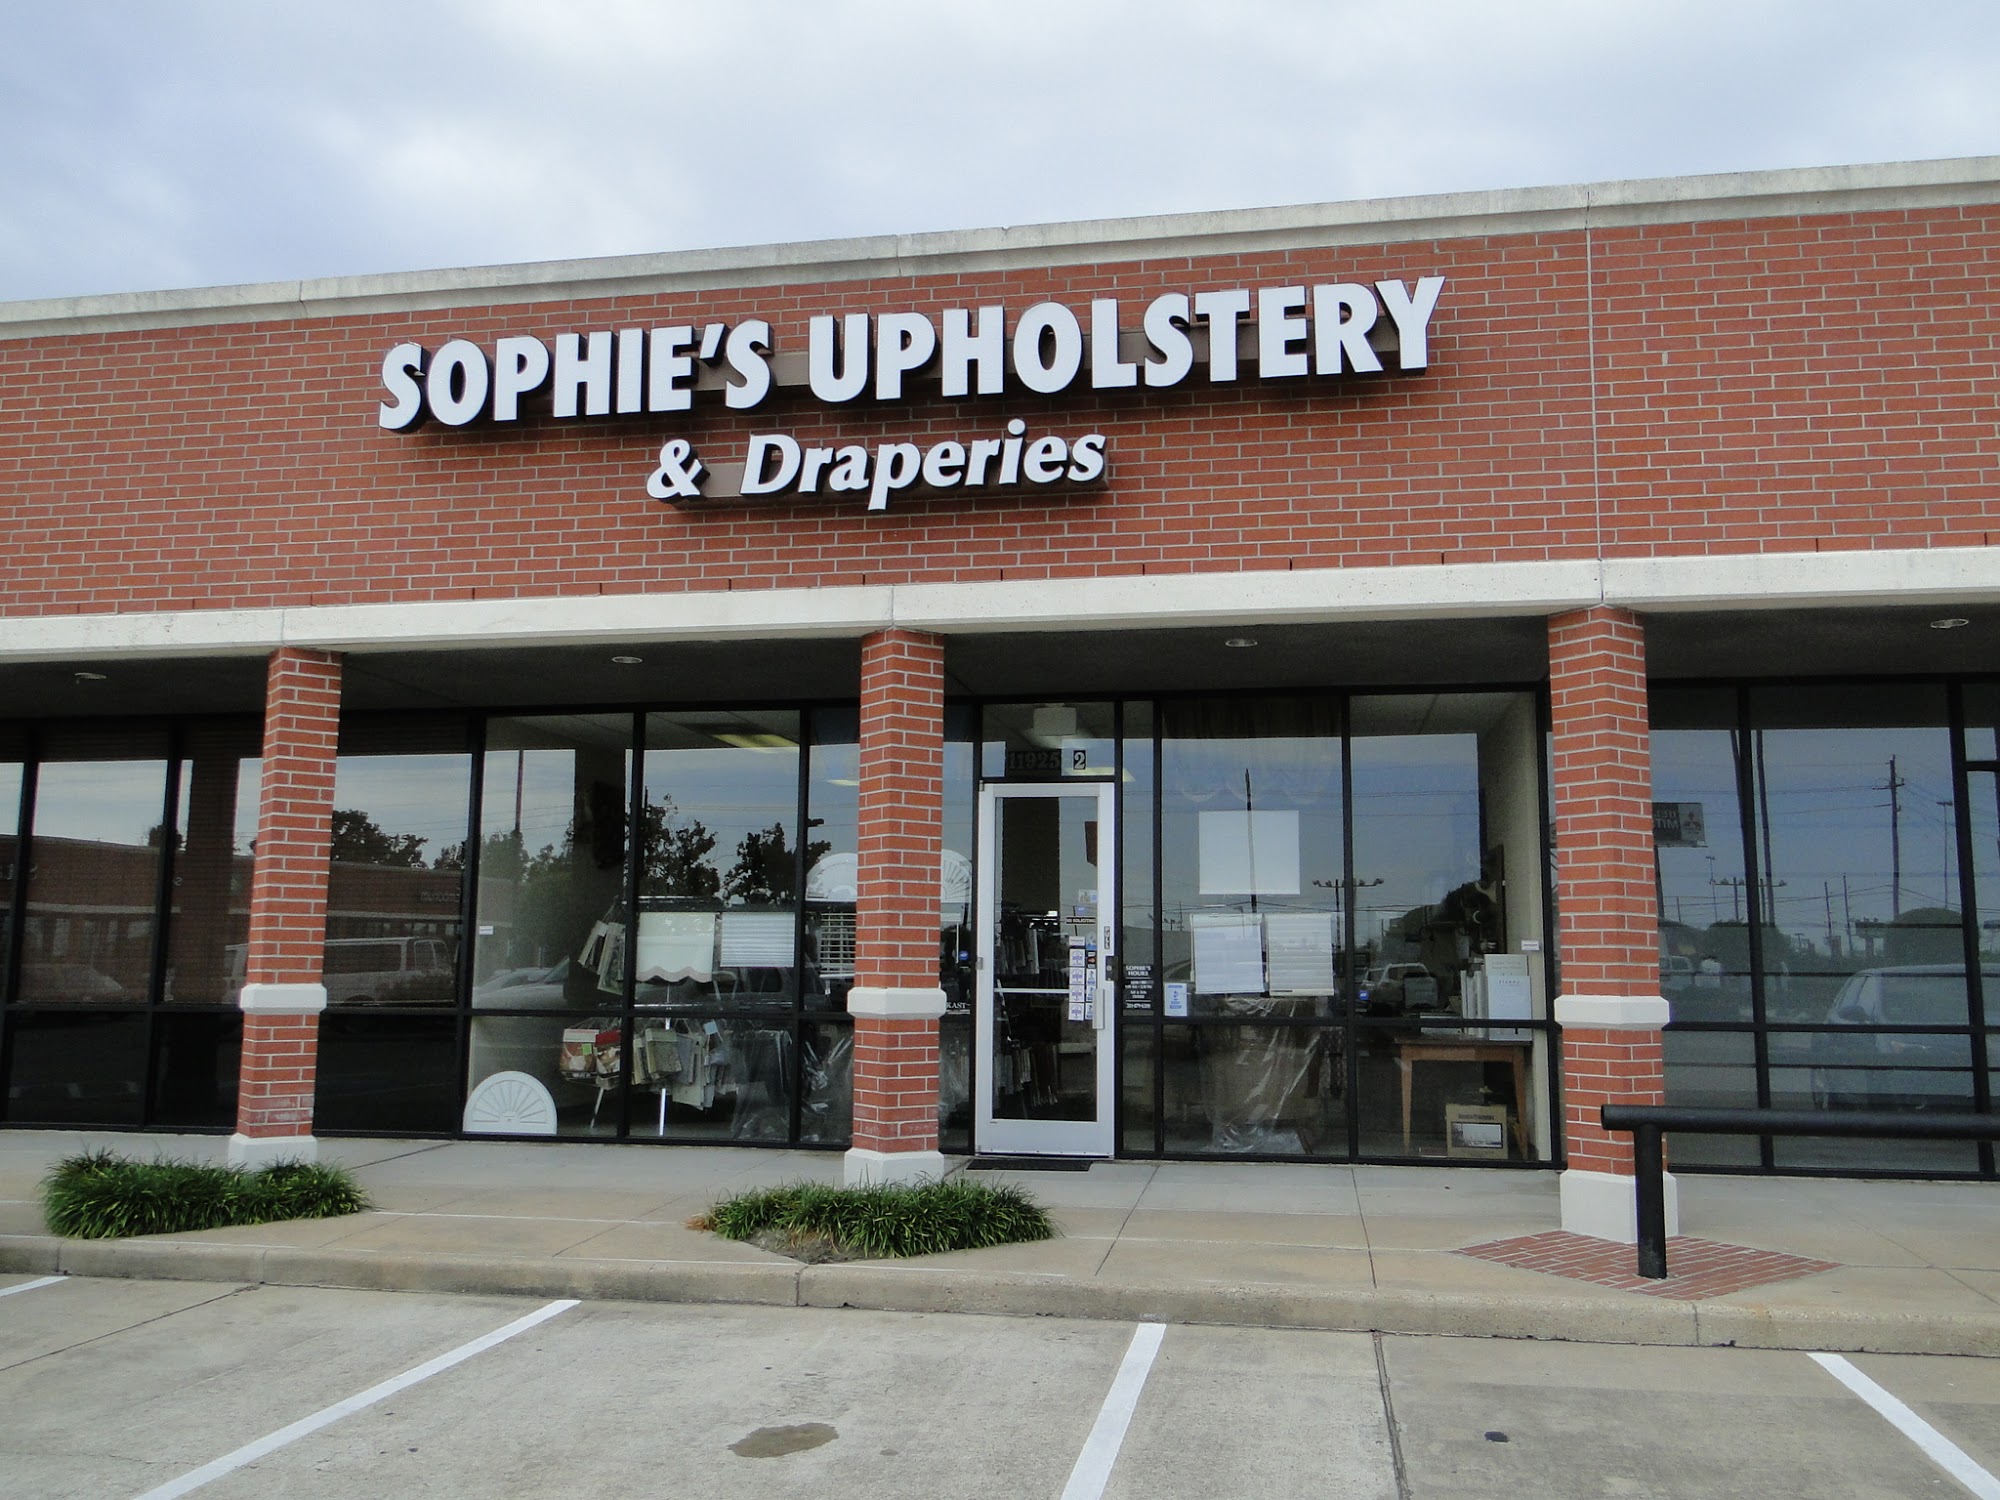 Sophie's Upholstery & Drapery